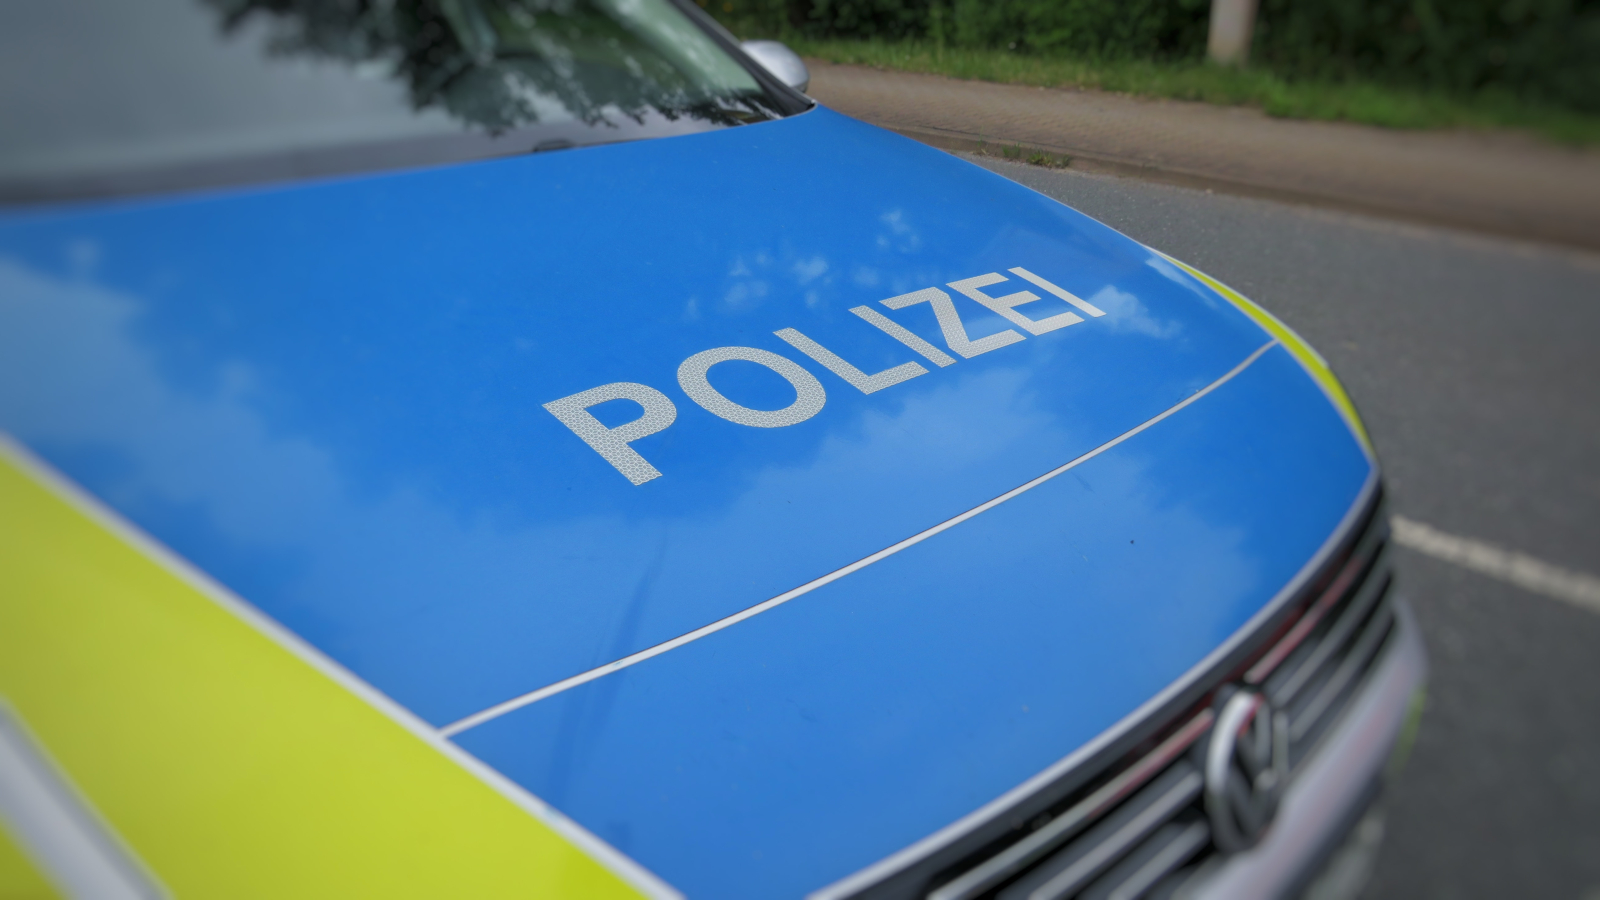 Almanya, bilgisayar korsanını kimlik avı saldırıları yoluyla 4 milyon € çaldığı için tutukladı